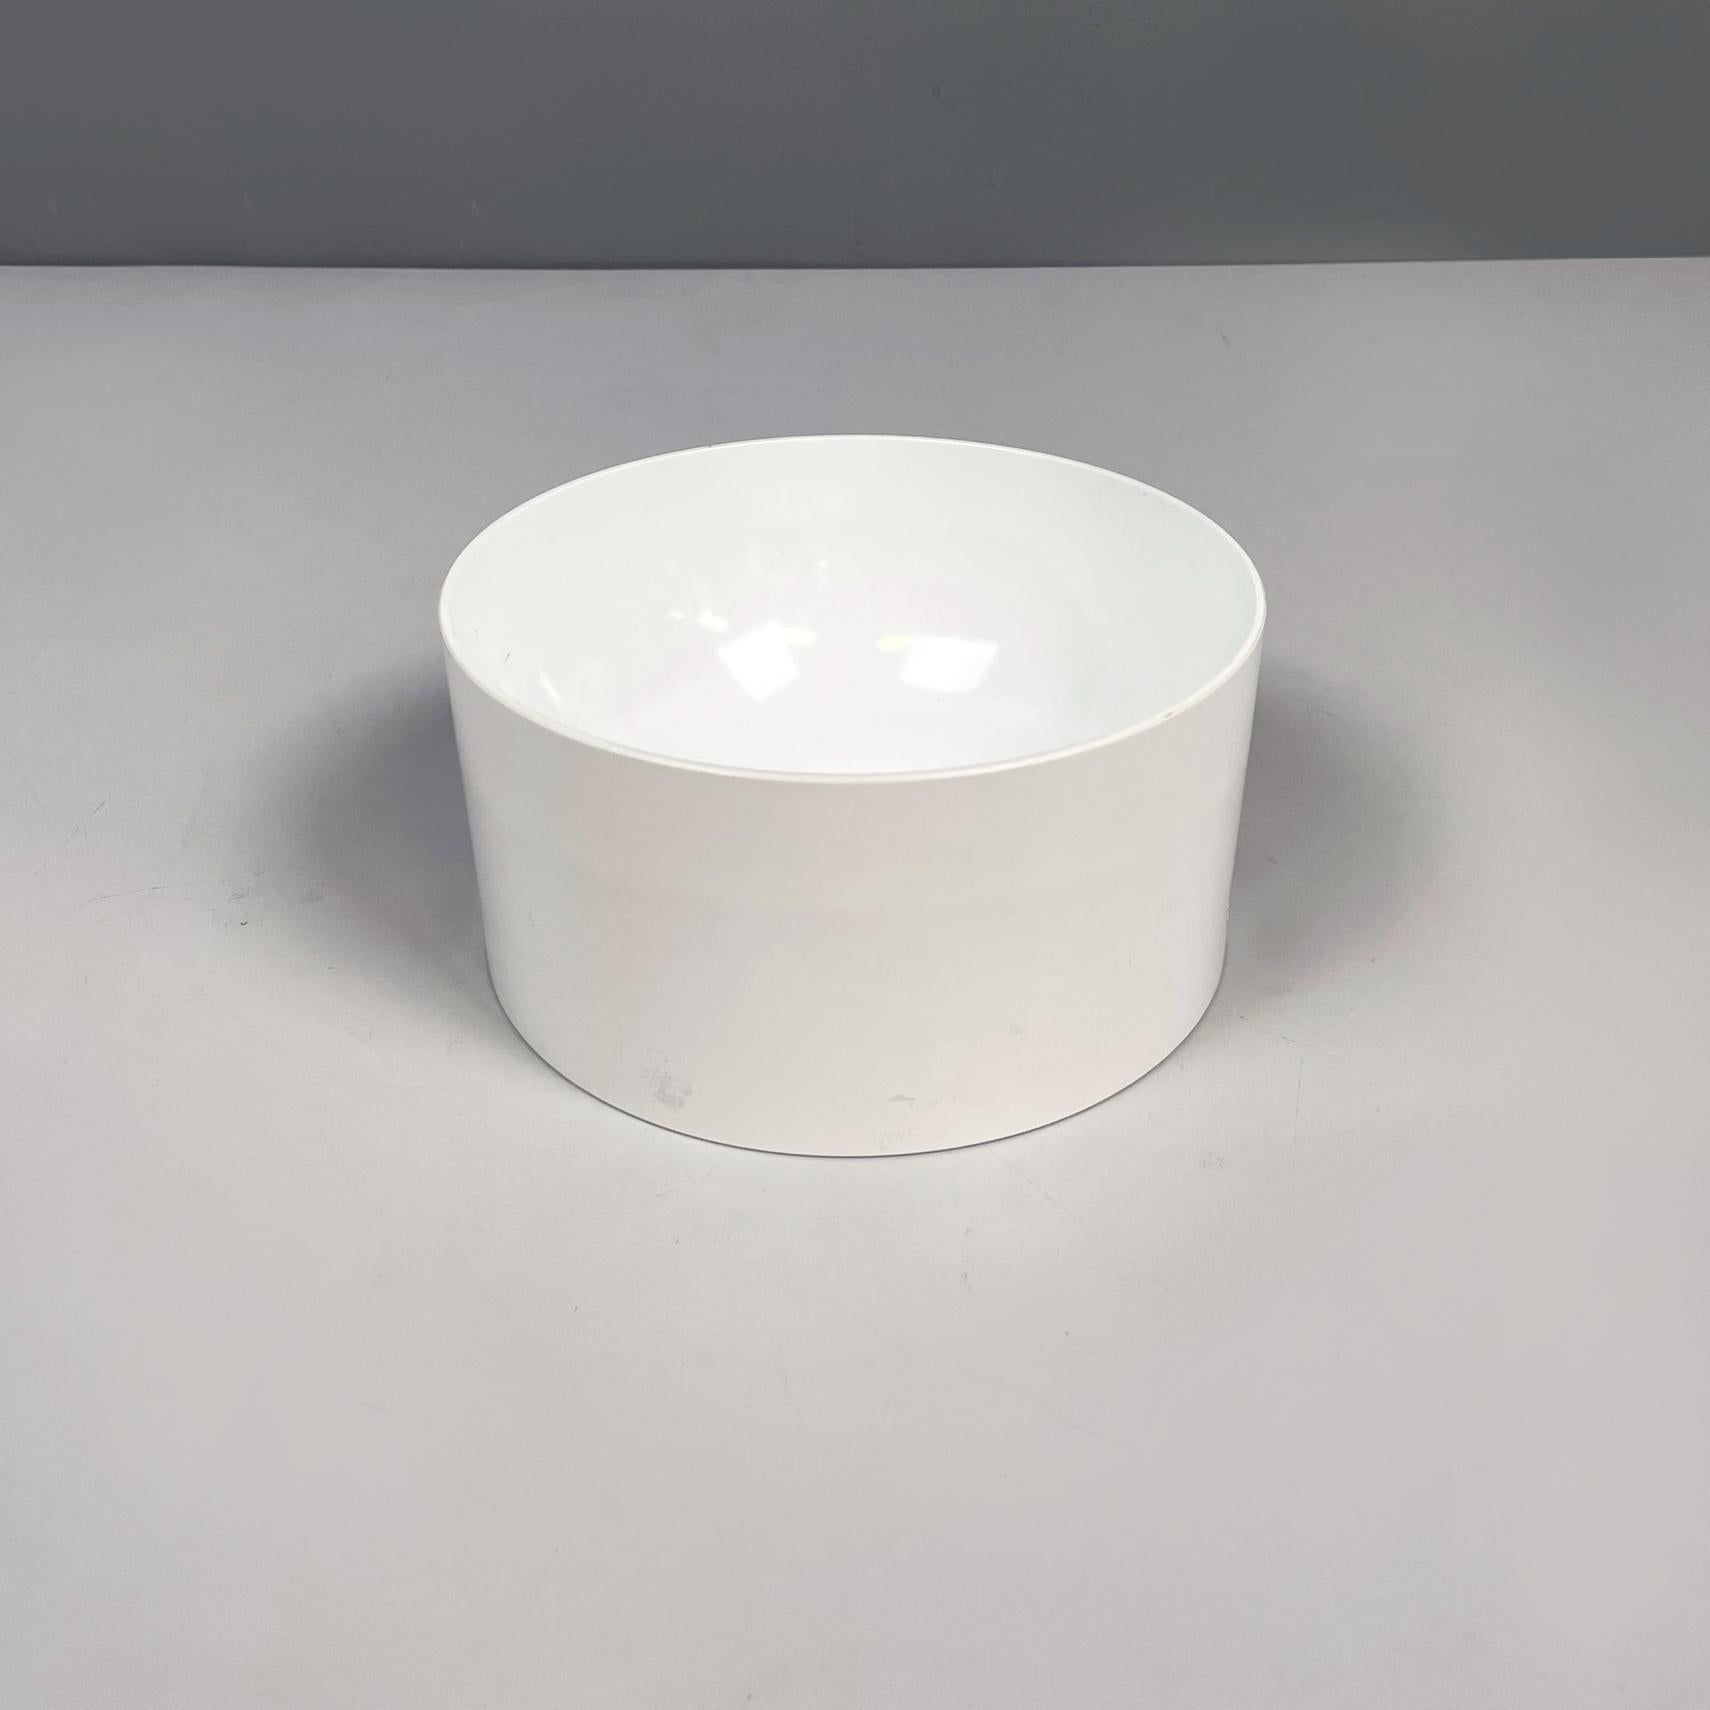 Bol cylindrique en plastique blanc de l'ère spatiale moderne italienne par Enzo Mari pour Danese, 1970
Bol cylindrique en fibre de verre blanc. Sur les deux côtés, il y a une paire de trous ronds. Il peut être utilisé comme centre de table, coupe de